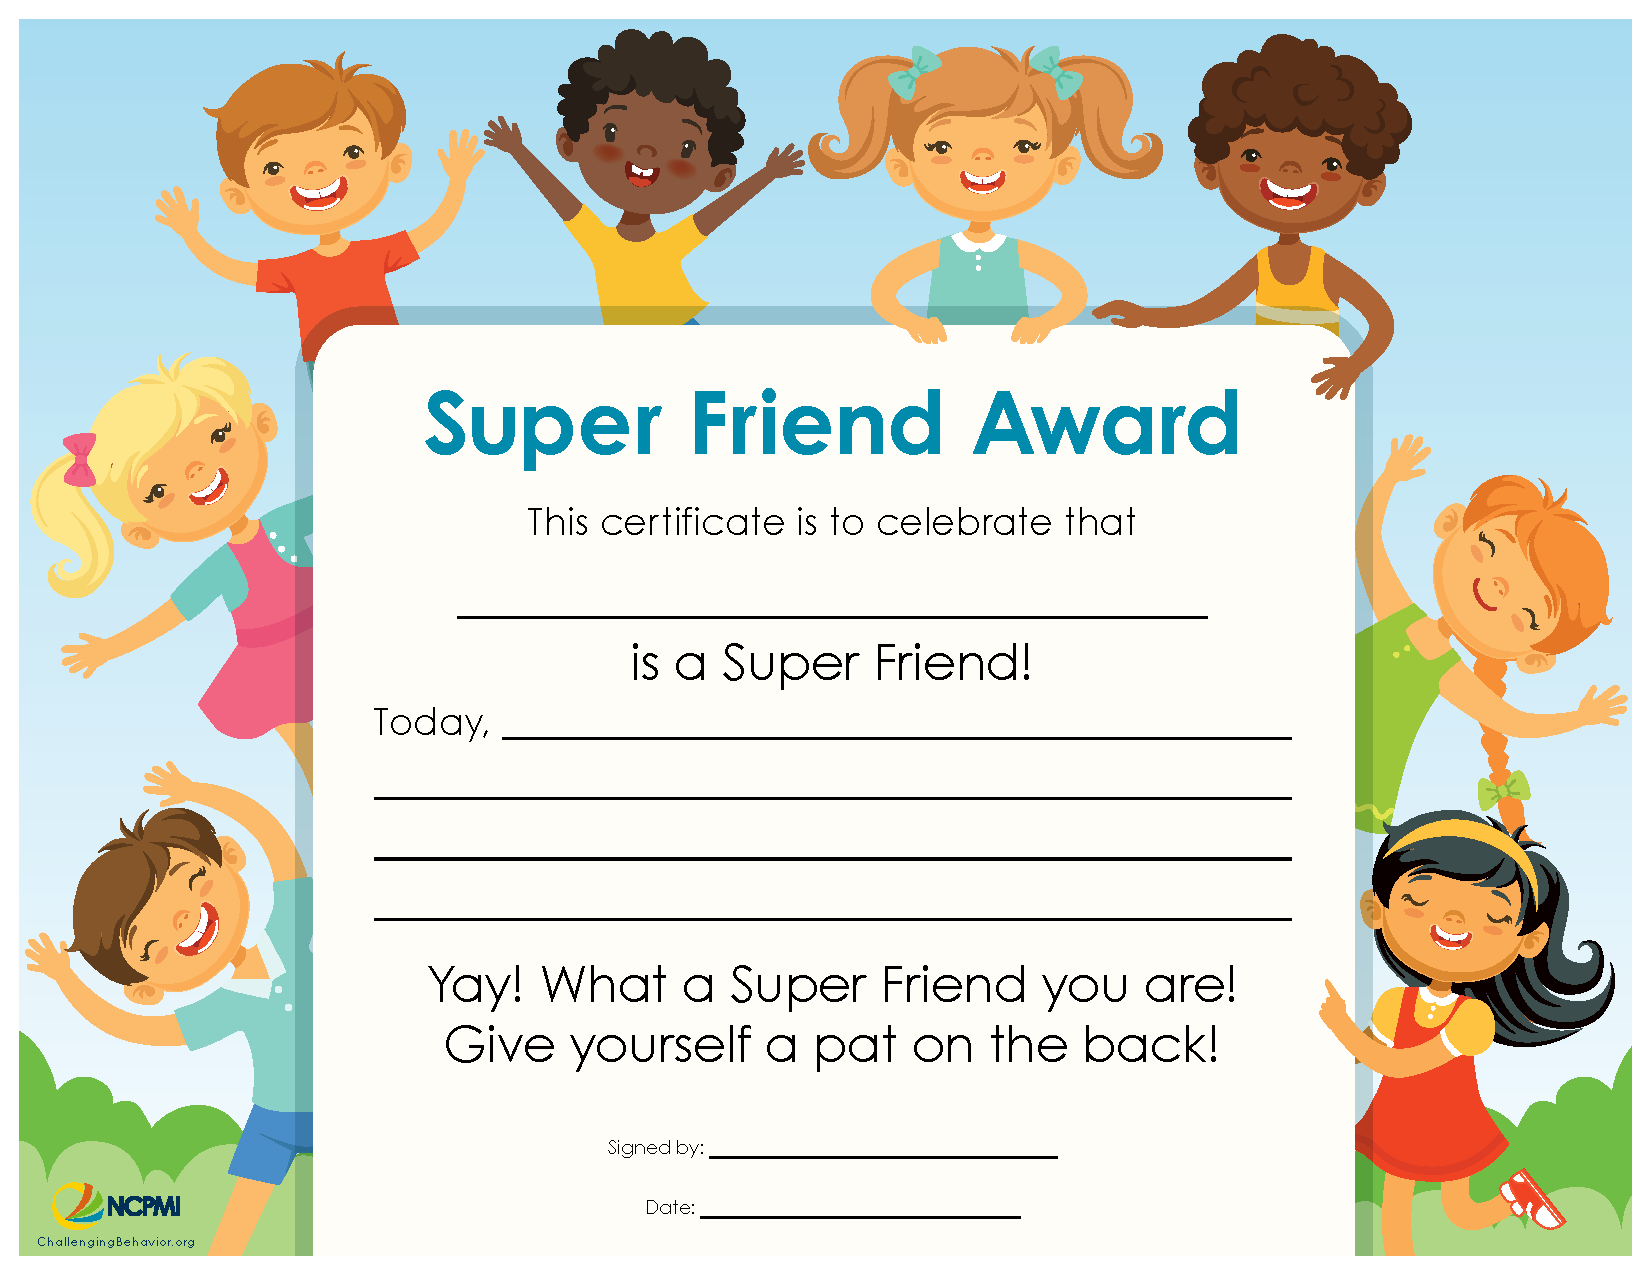 Super Friend Award